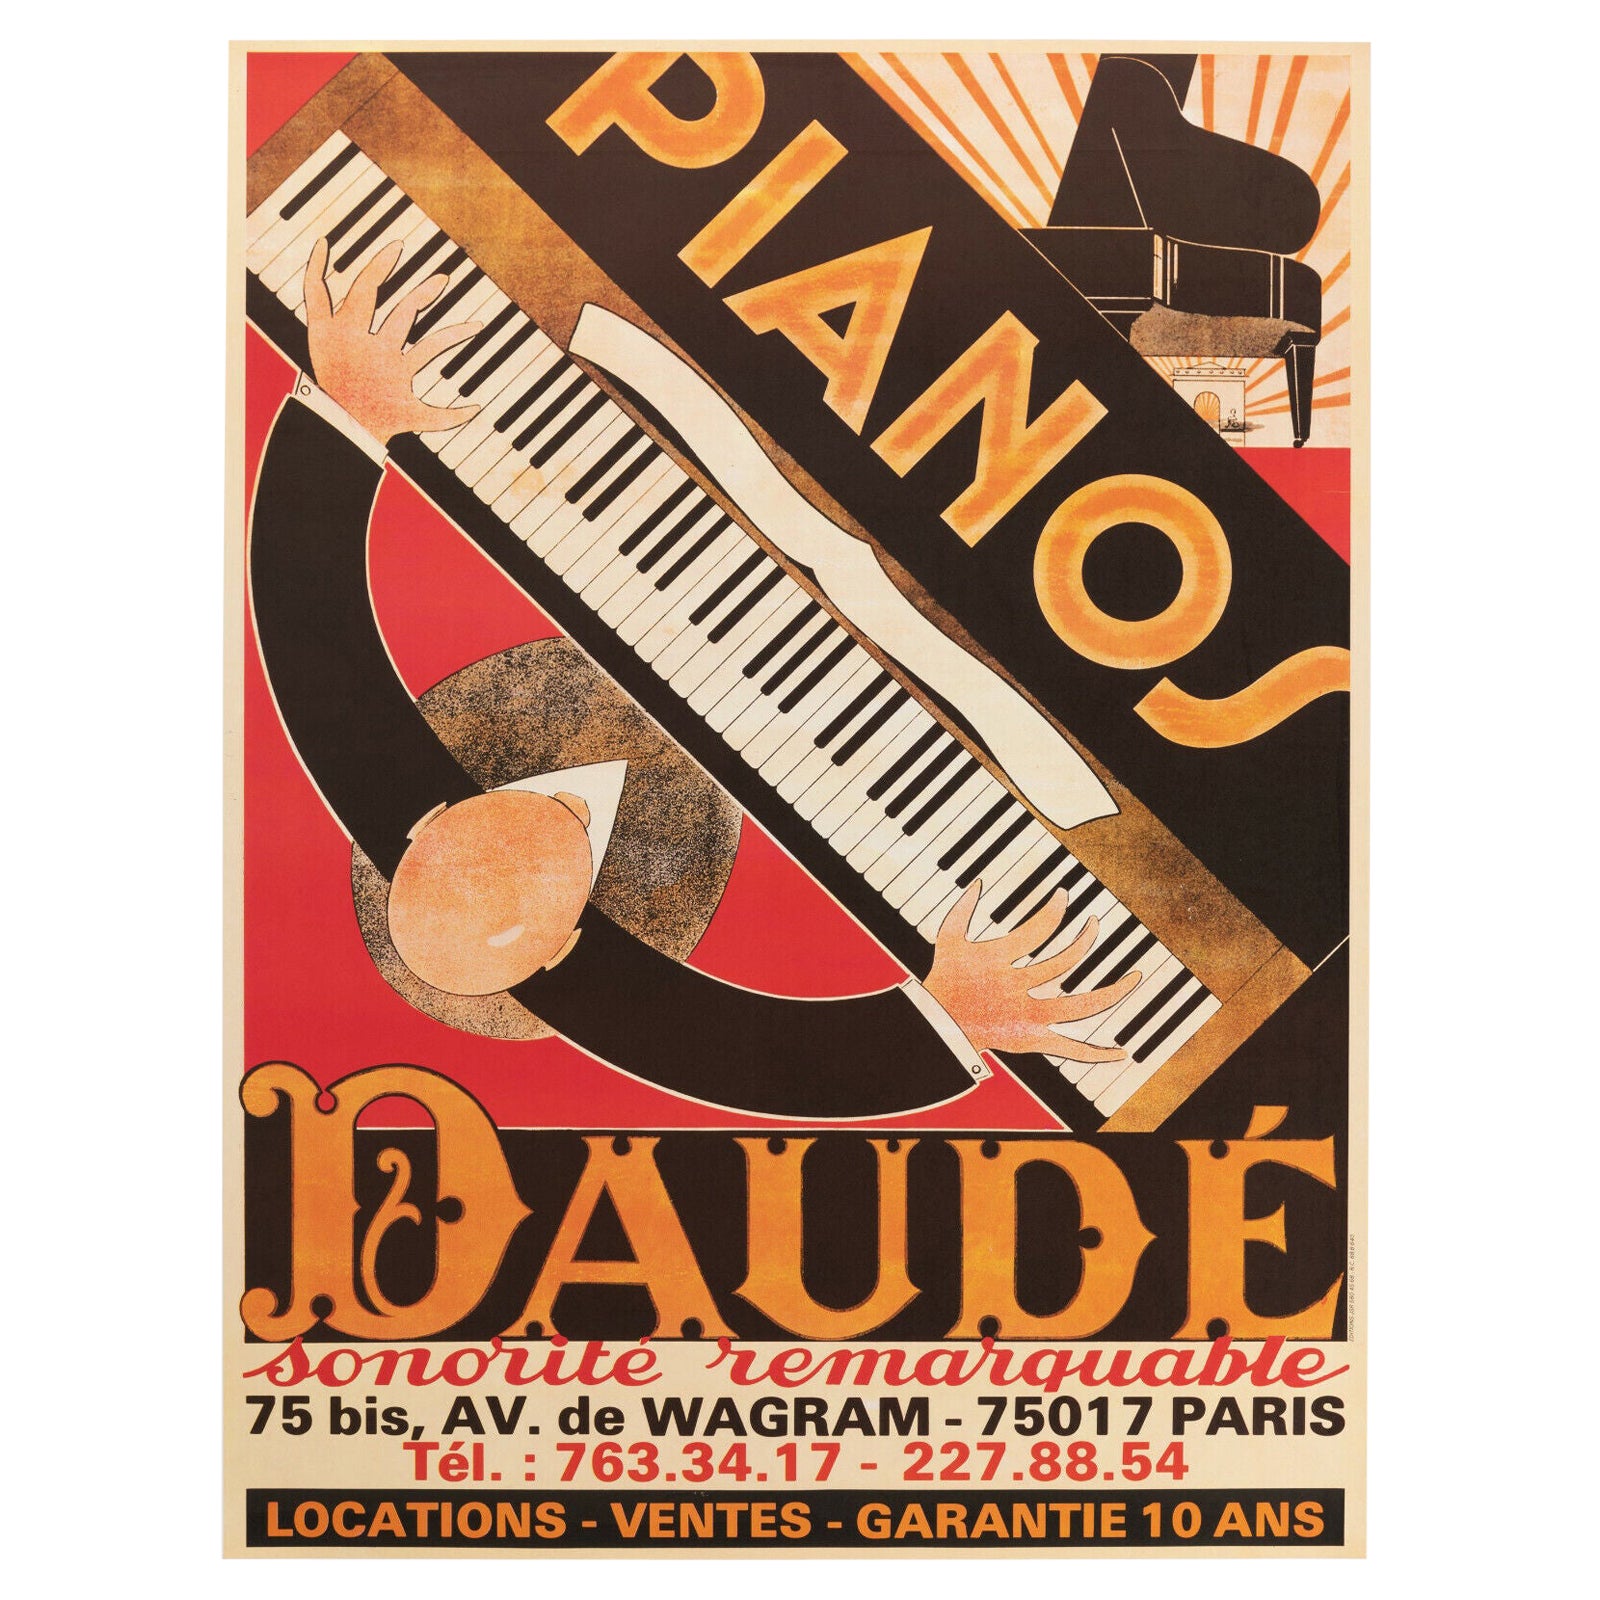 Andre Daude, affiche de musique originale vintage, Piano Daude, Paris, 1980